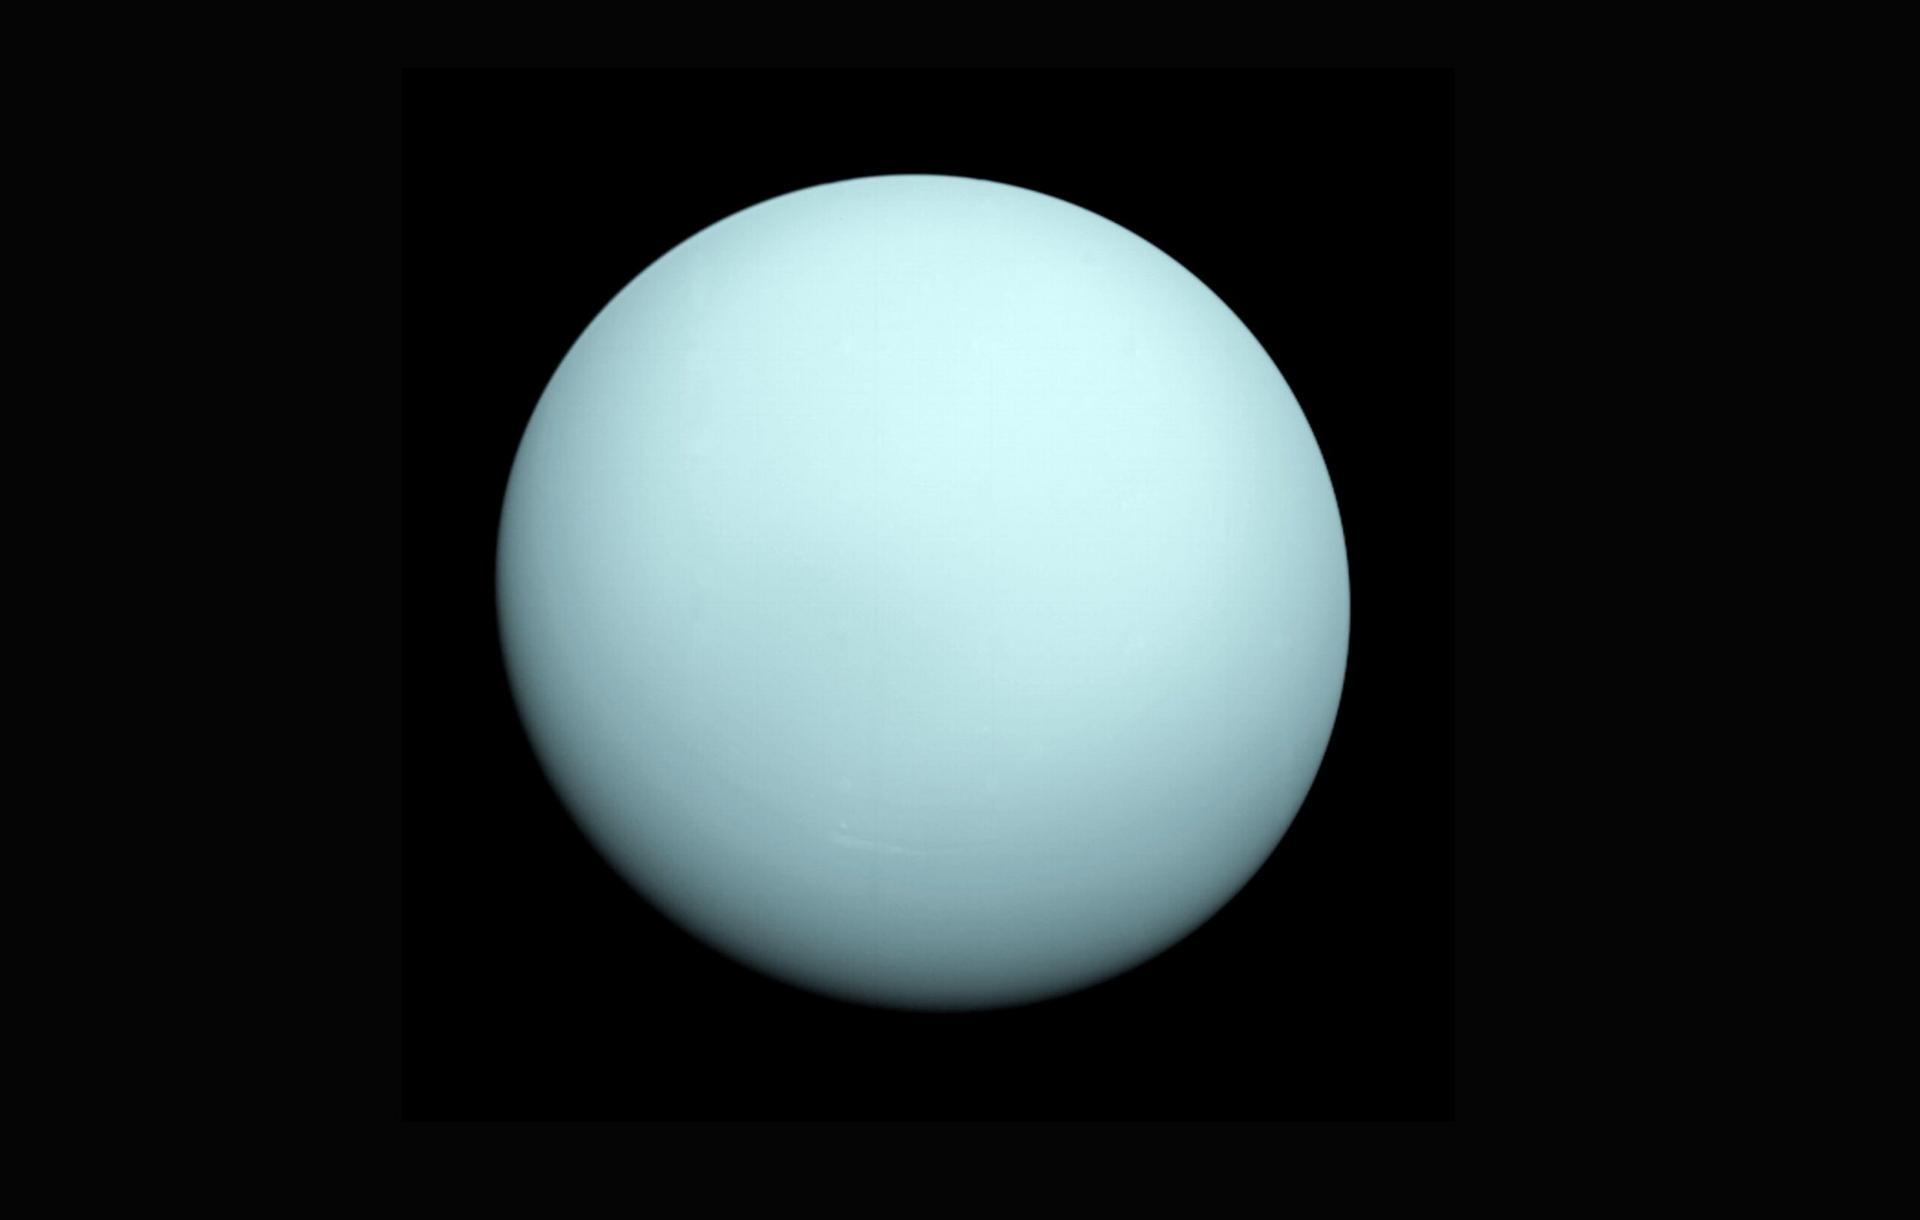 Складена найдетальніша карта полярних сяйв Урану